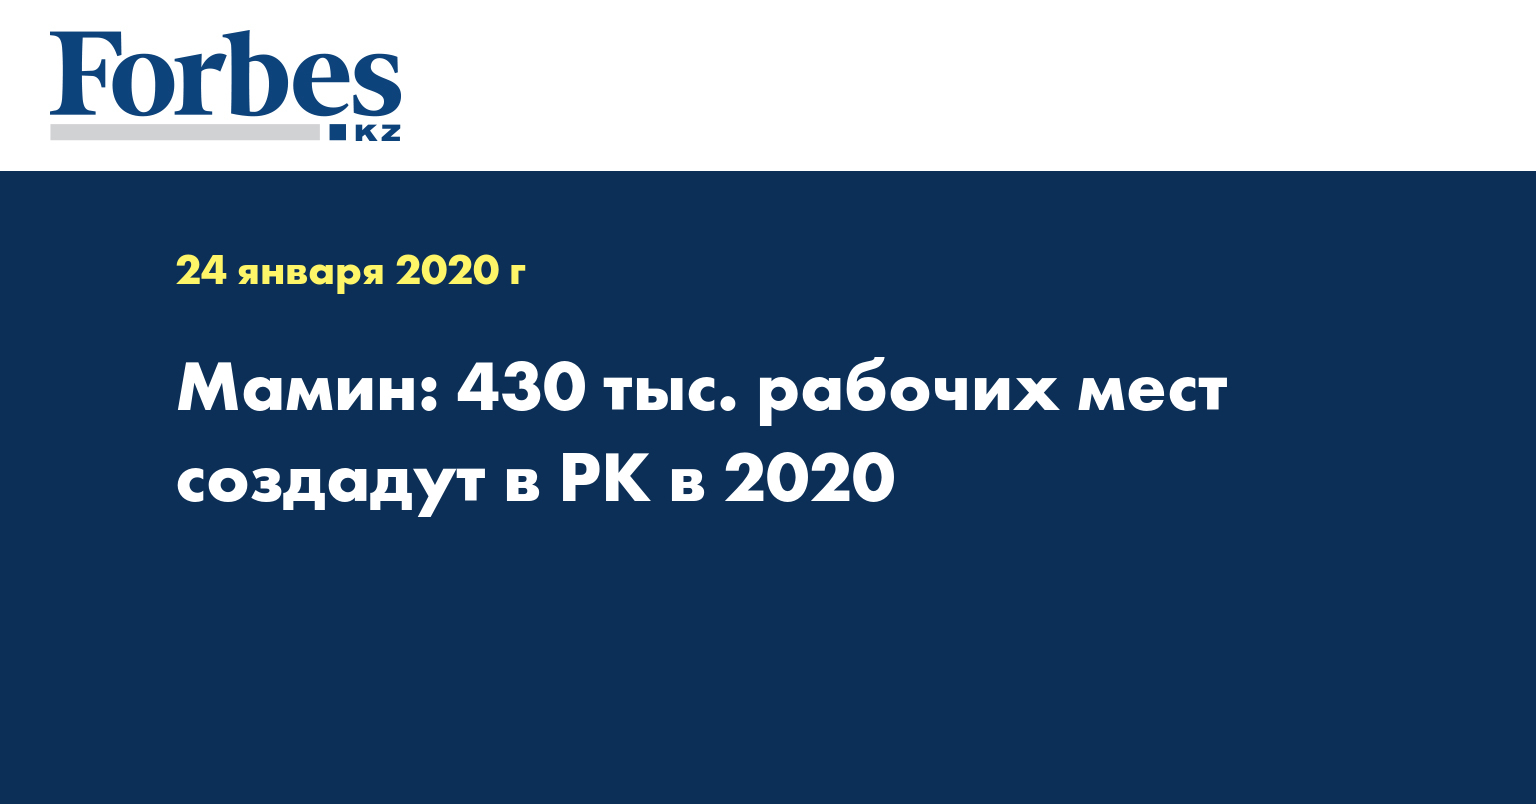 Мамин: 430 тыс. рабочих мест создадут в РК в 2020 